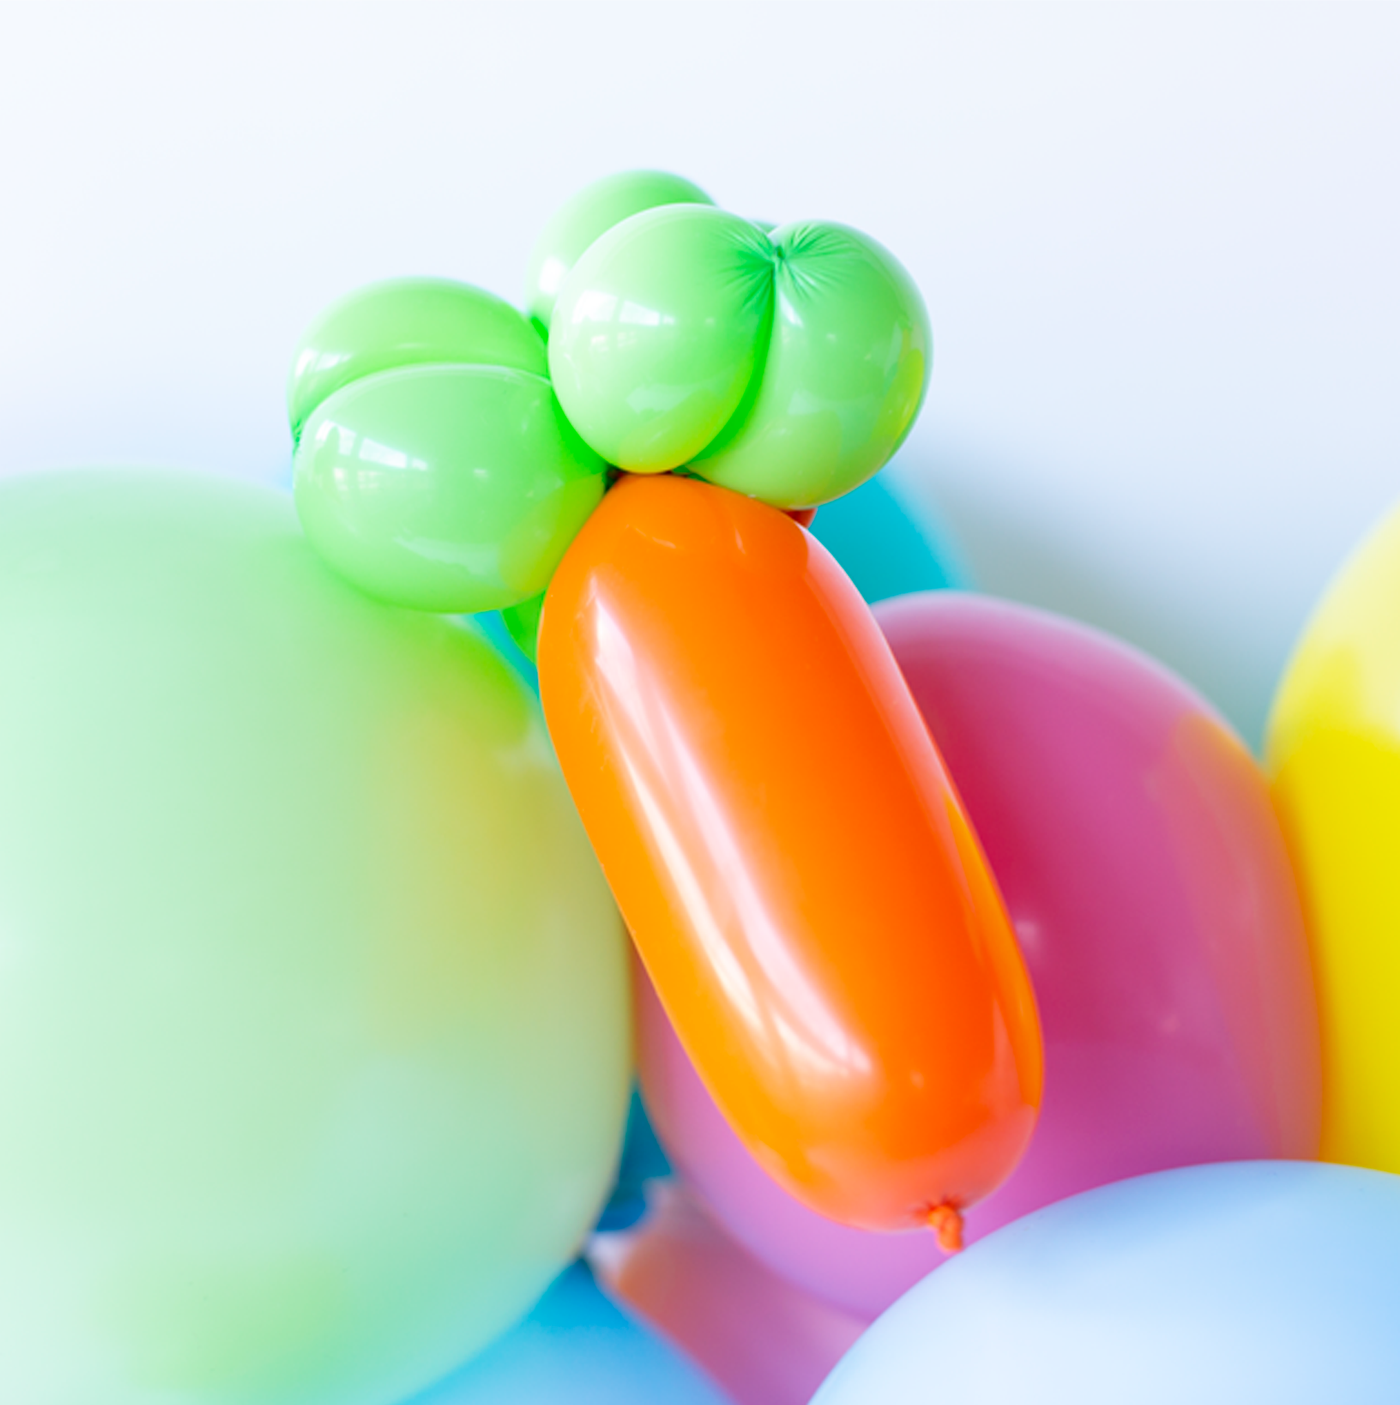 Balloon 'Animal' Kit - Carrot